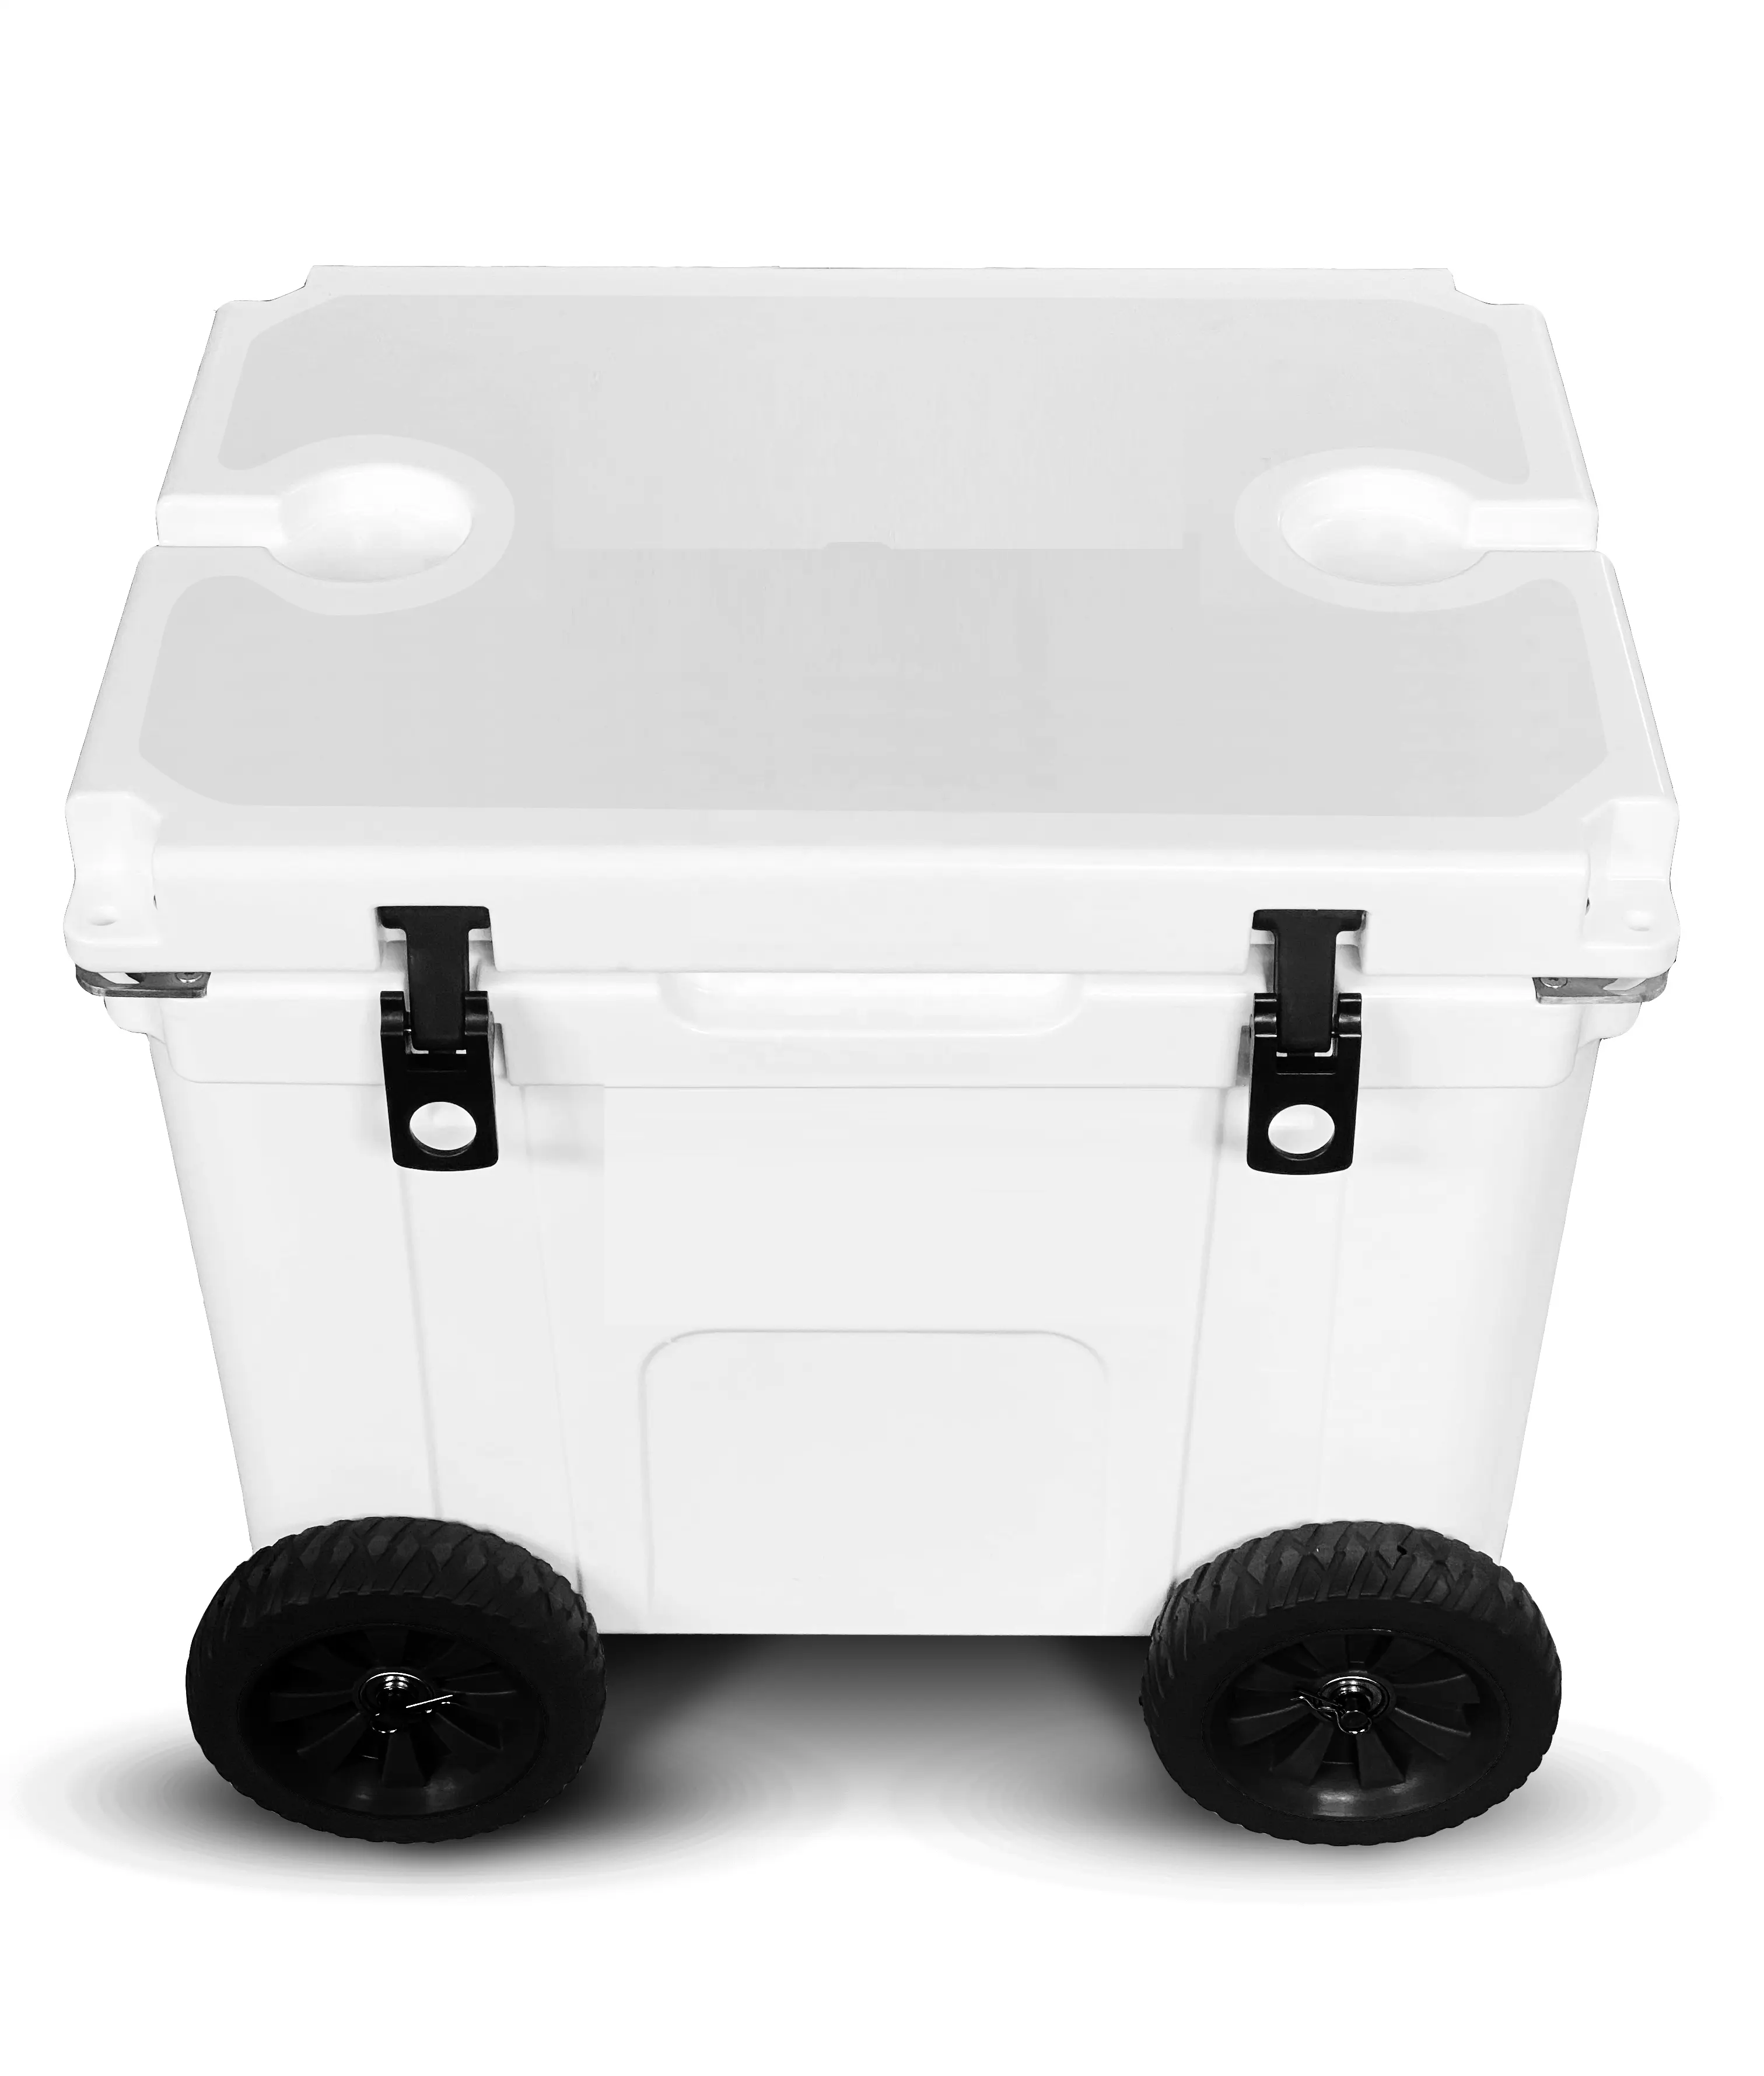 55 quart 2019 migliore scatola di vendita di ghiaccio ruota 4 premium ruote di raffreddamento